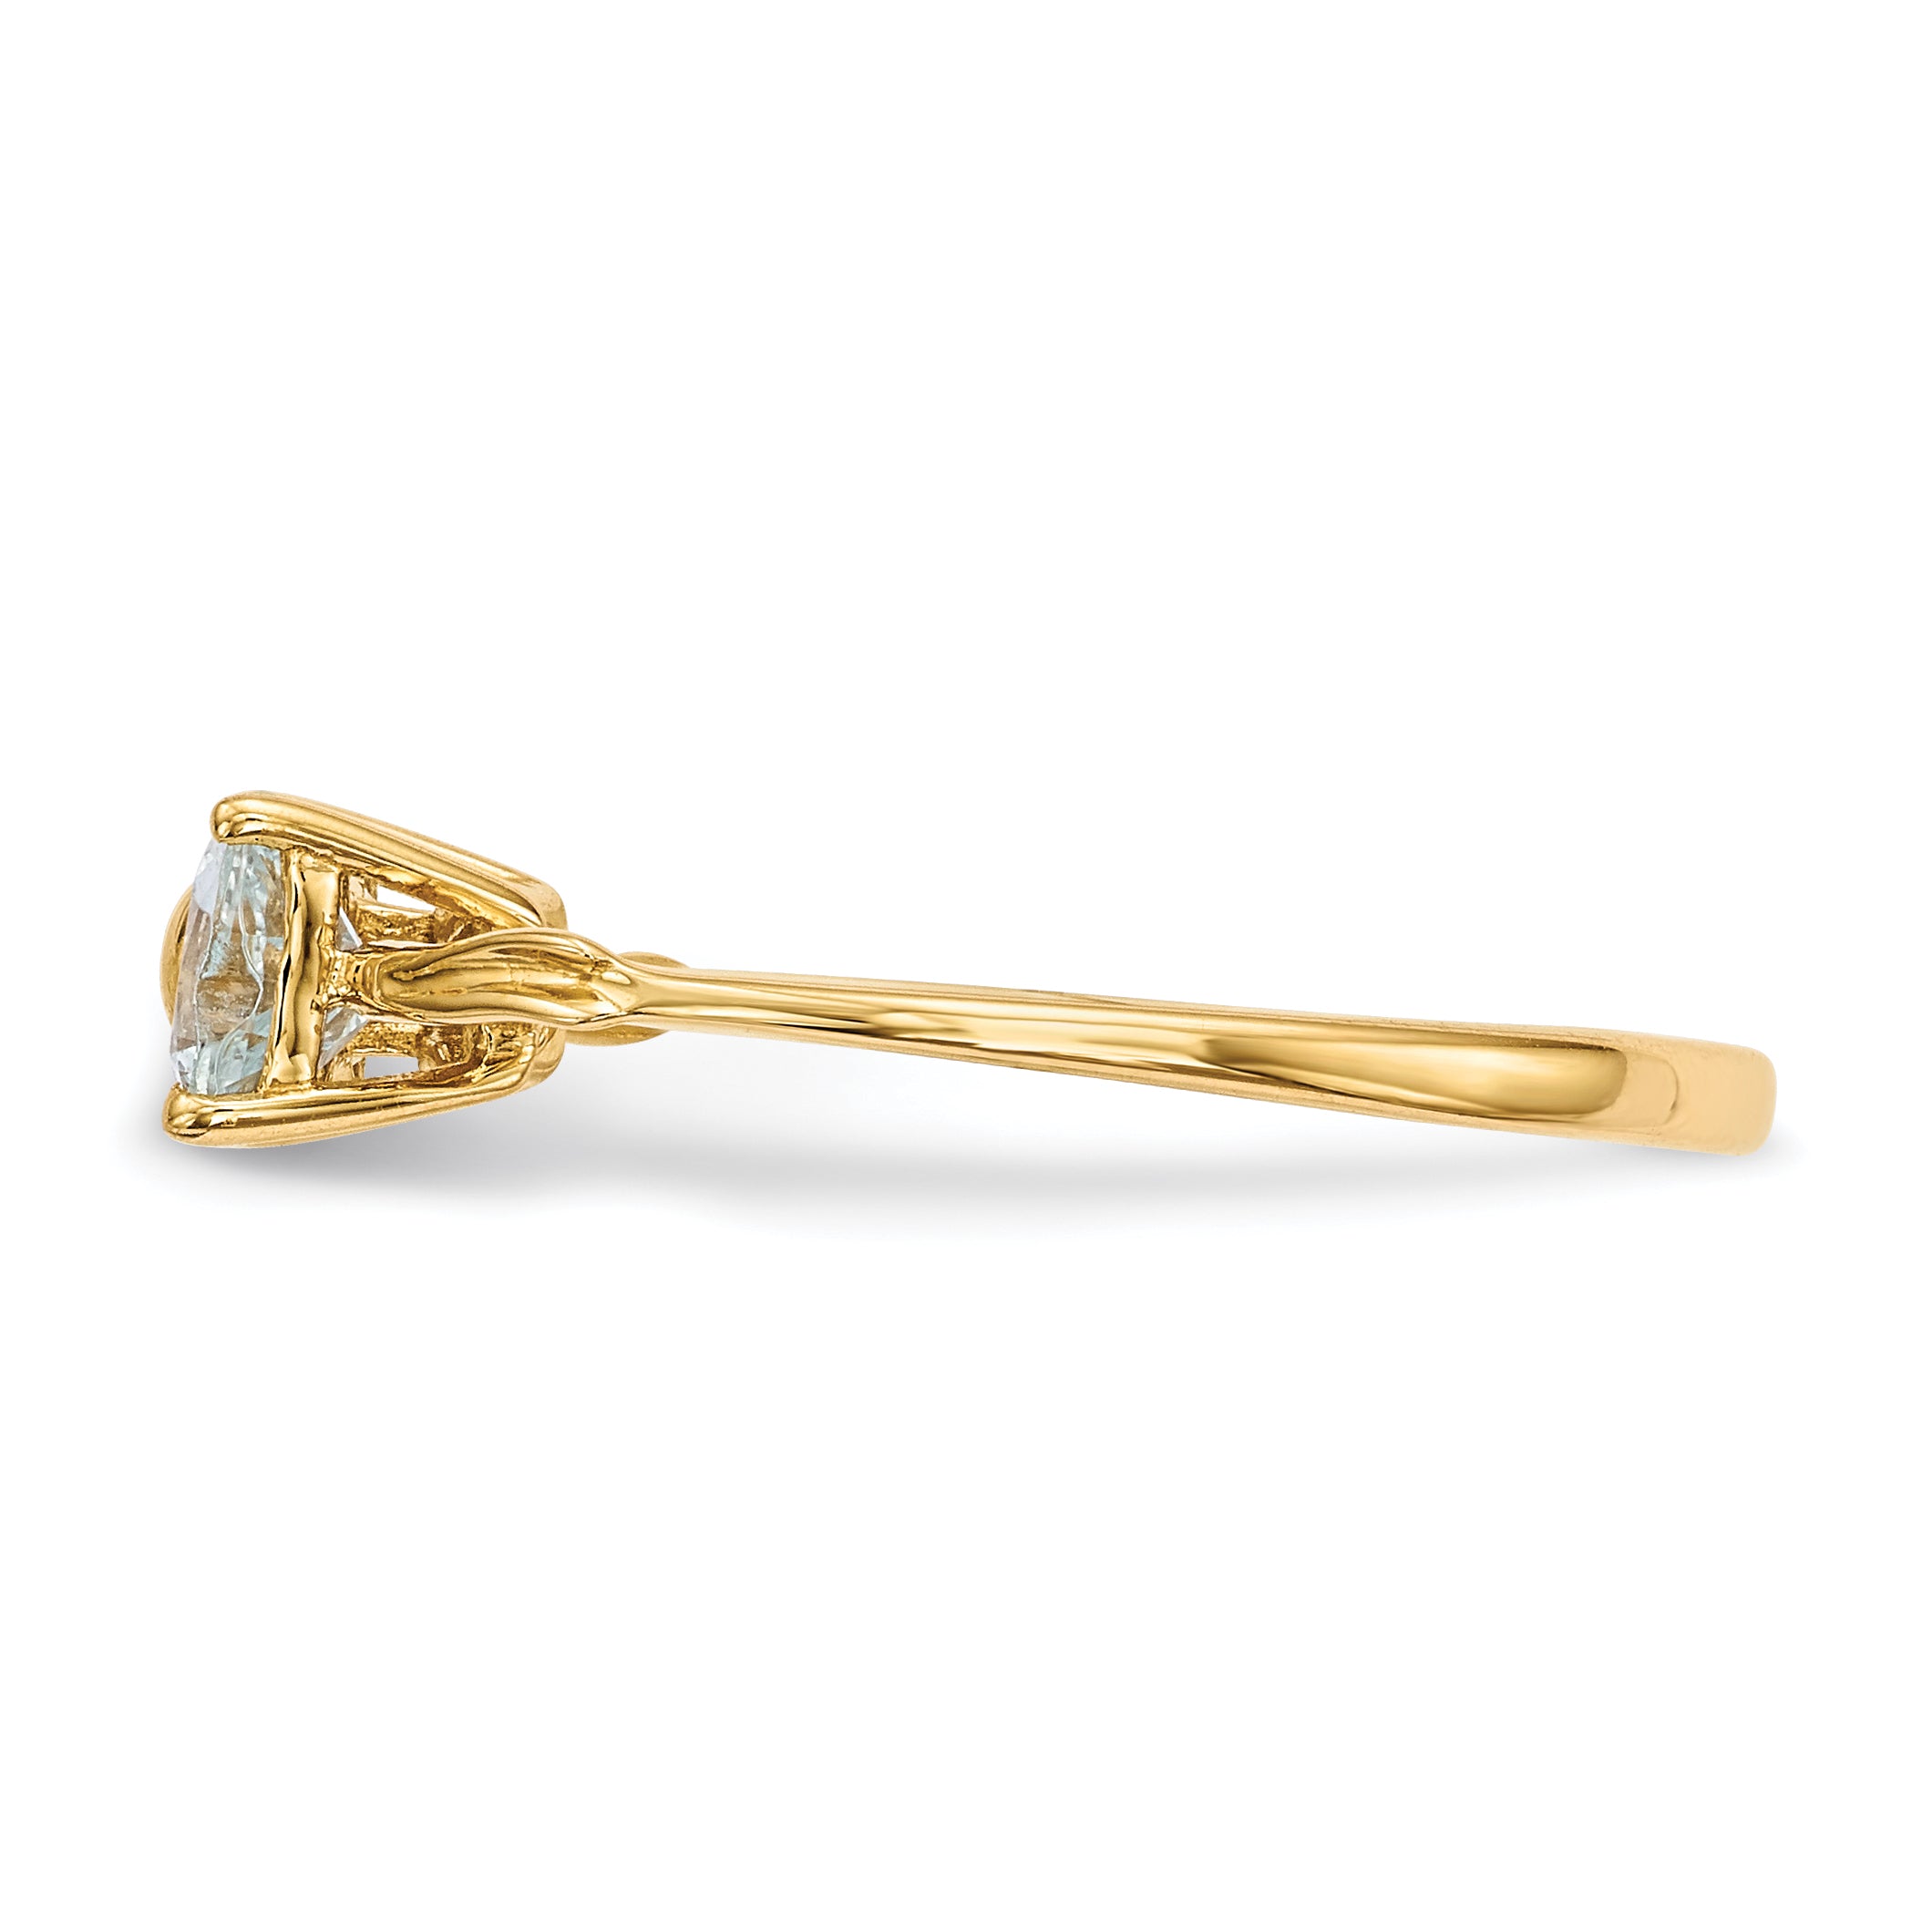 14k Gold Polished Aquamarine Bow Ring